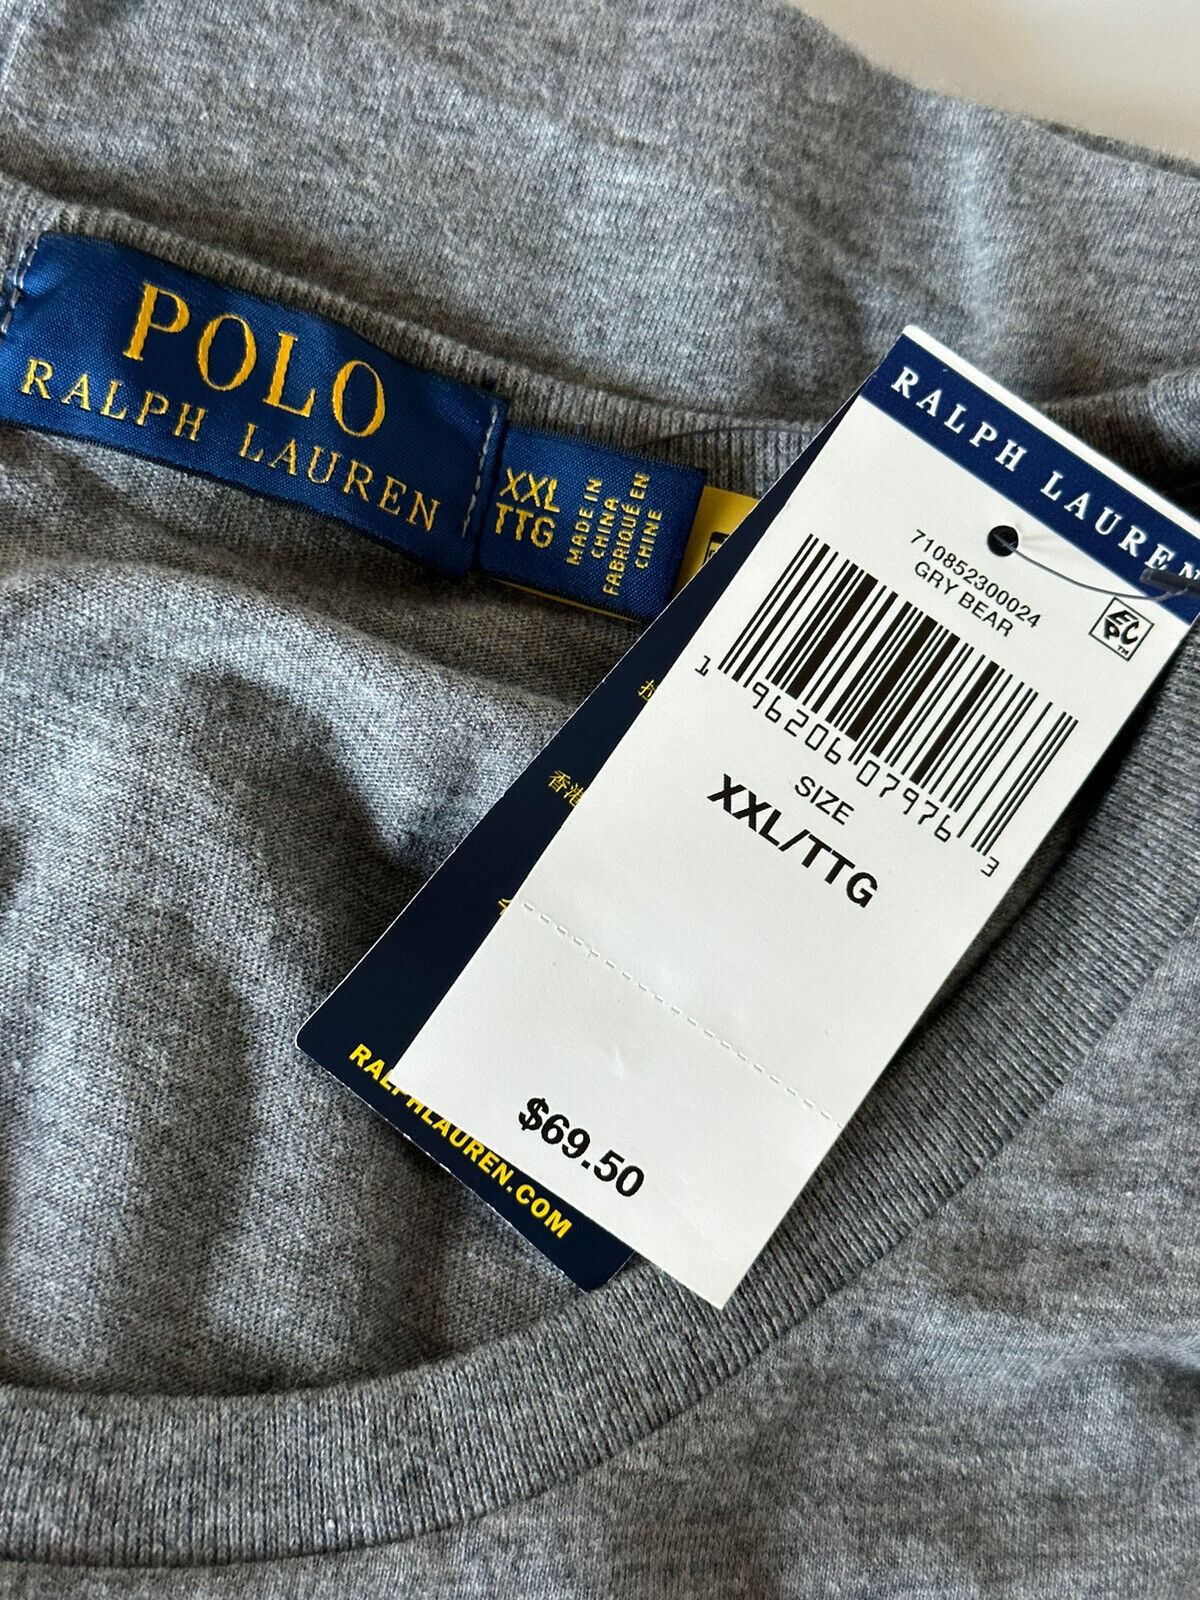 Хлопковая футболка NWT Polo Ralph Lauren Bear Серая 2XL/2TG